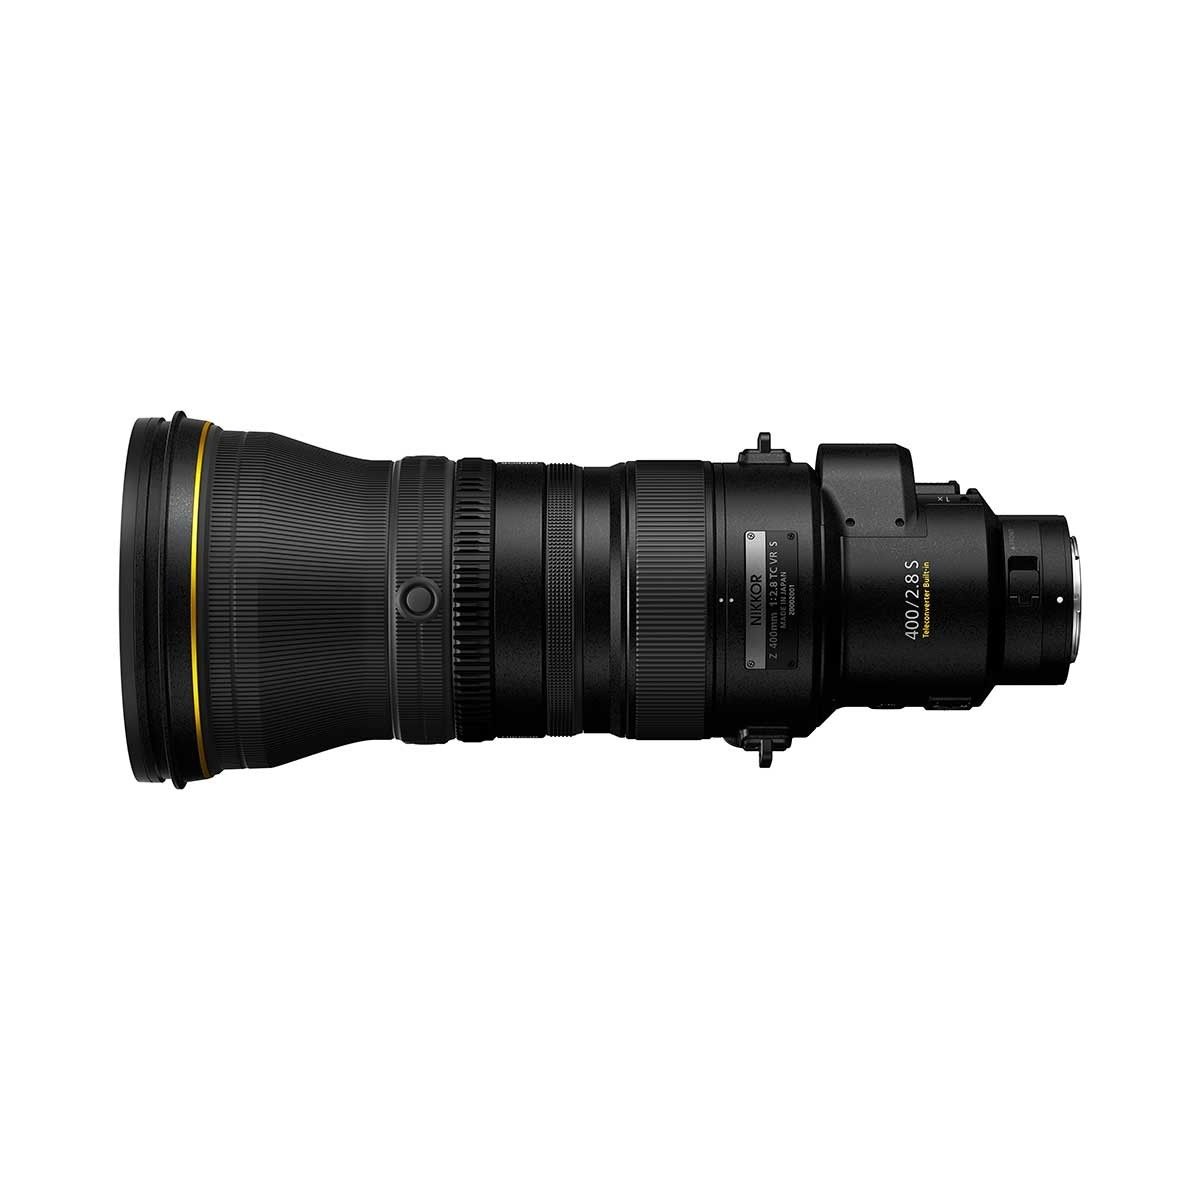 Nikon NIKKOR Z 400mm f2.8 TC VR S Lens - Black